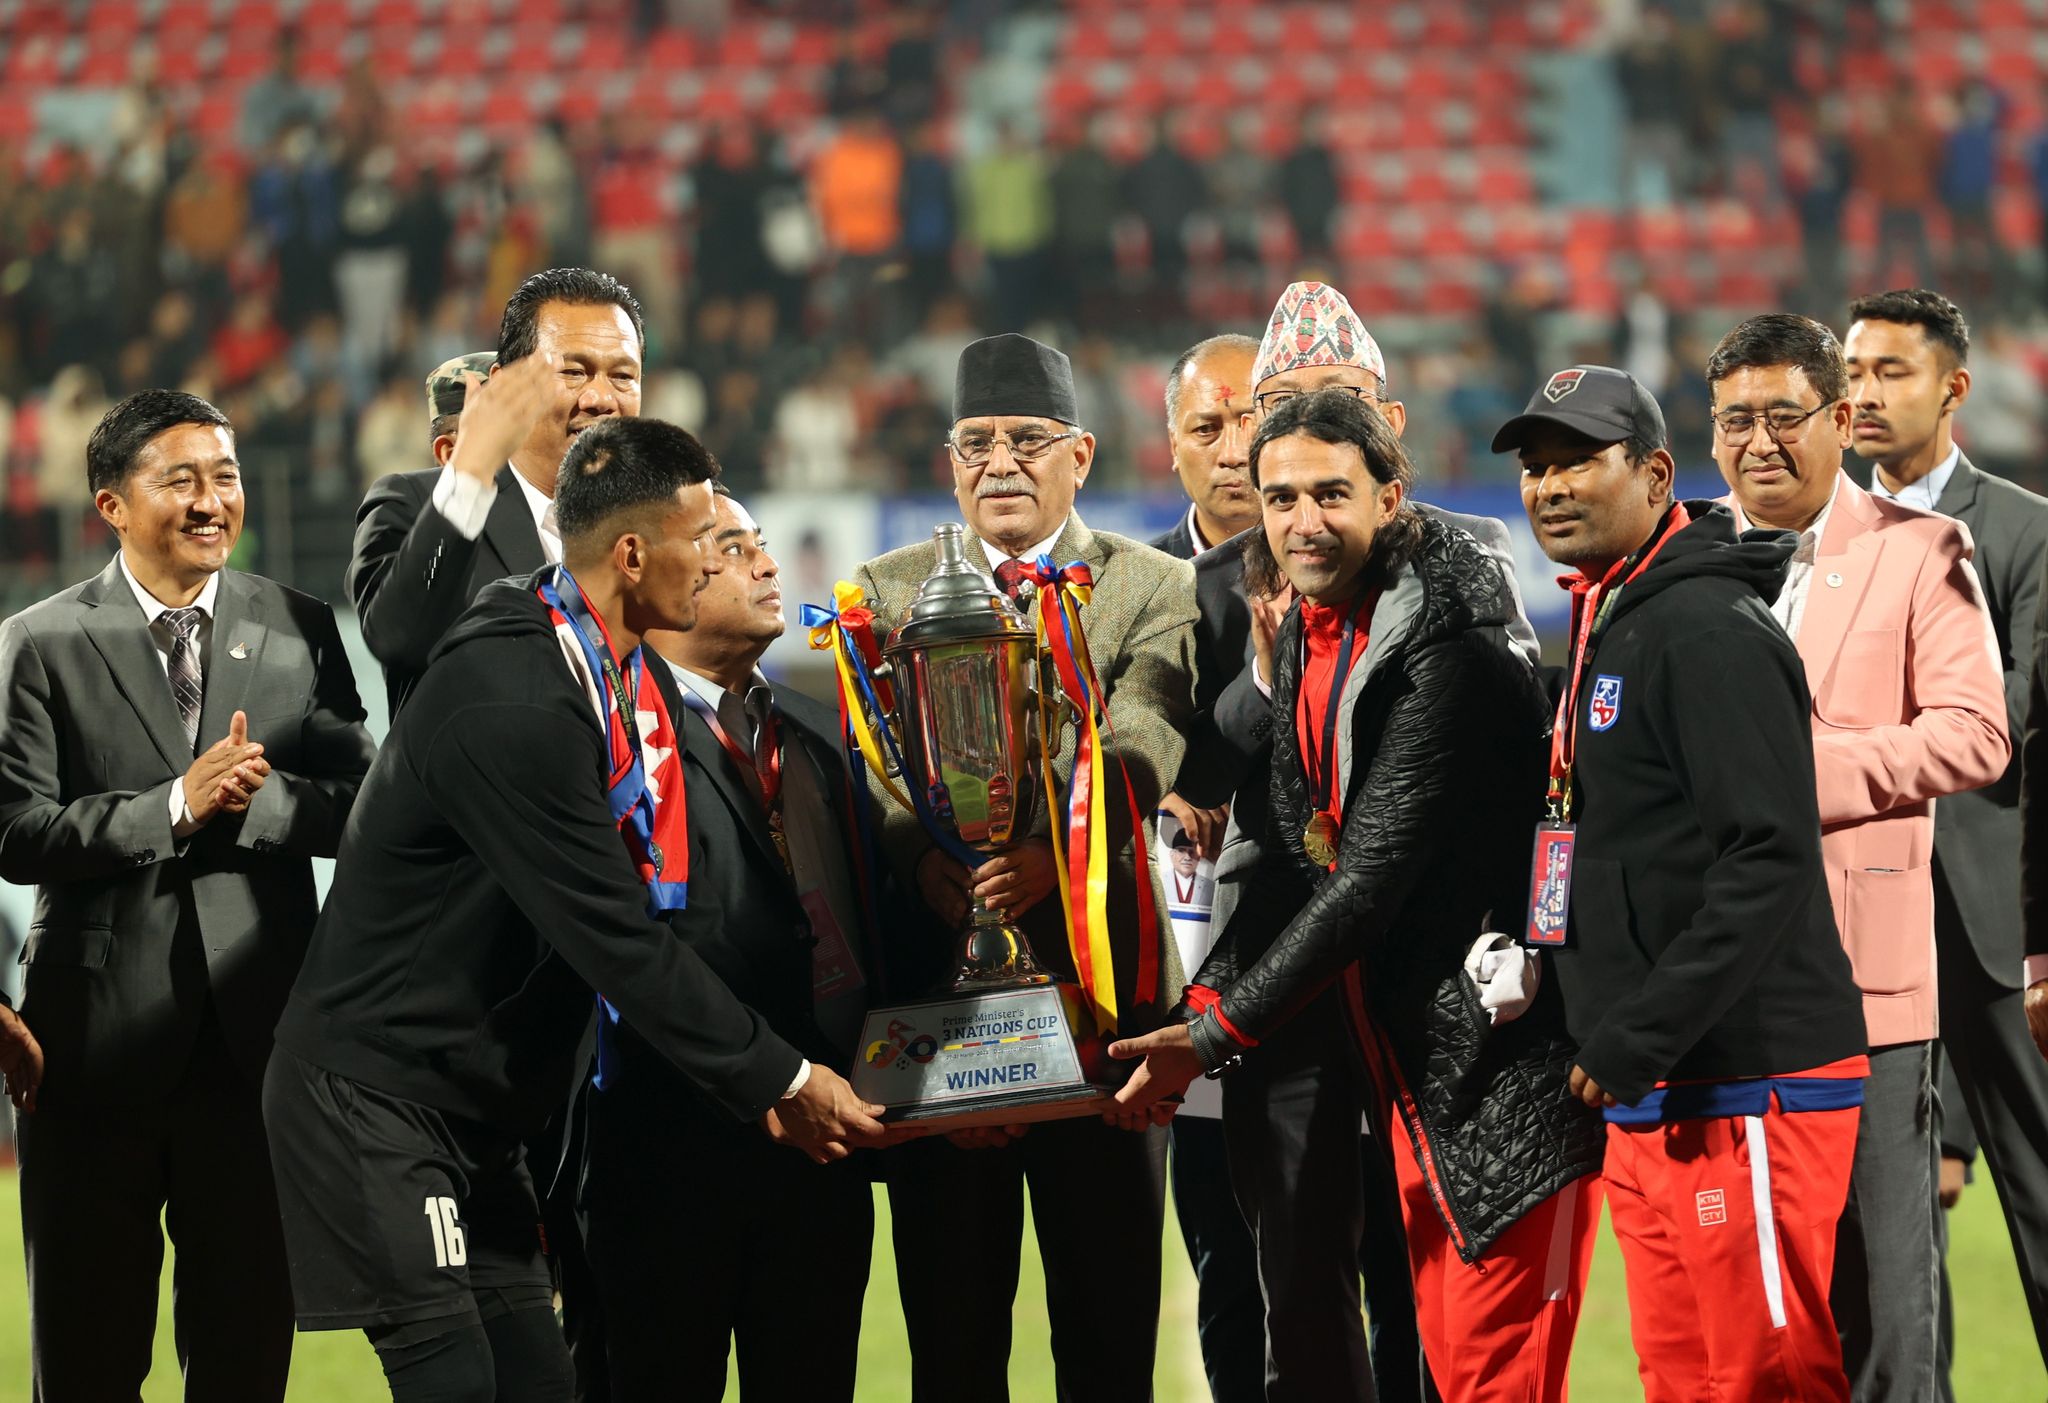 प्रधानमन्त्री त्रिदेशीय फुटबल प्रतियोगिताको उपाधि नेपाललाई